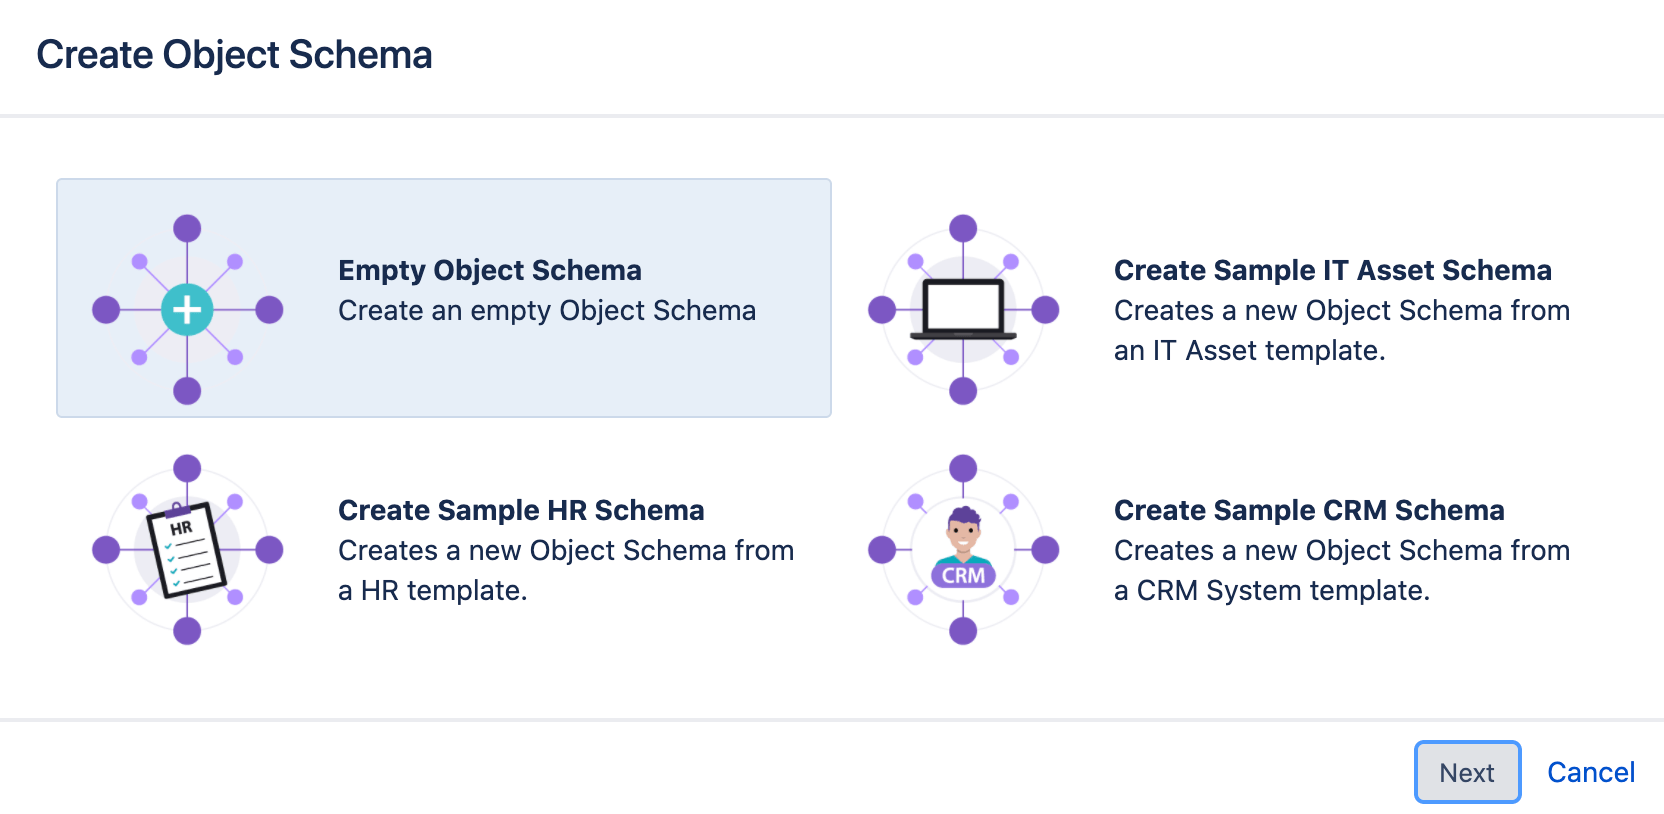 Object schema create form with the options of empty schema, IT asset schema, HR schema and CRM schema.